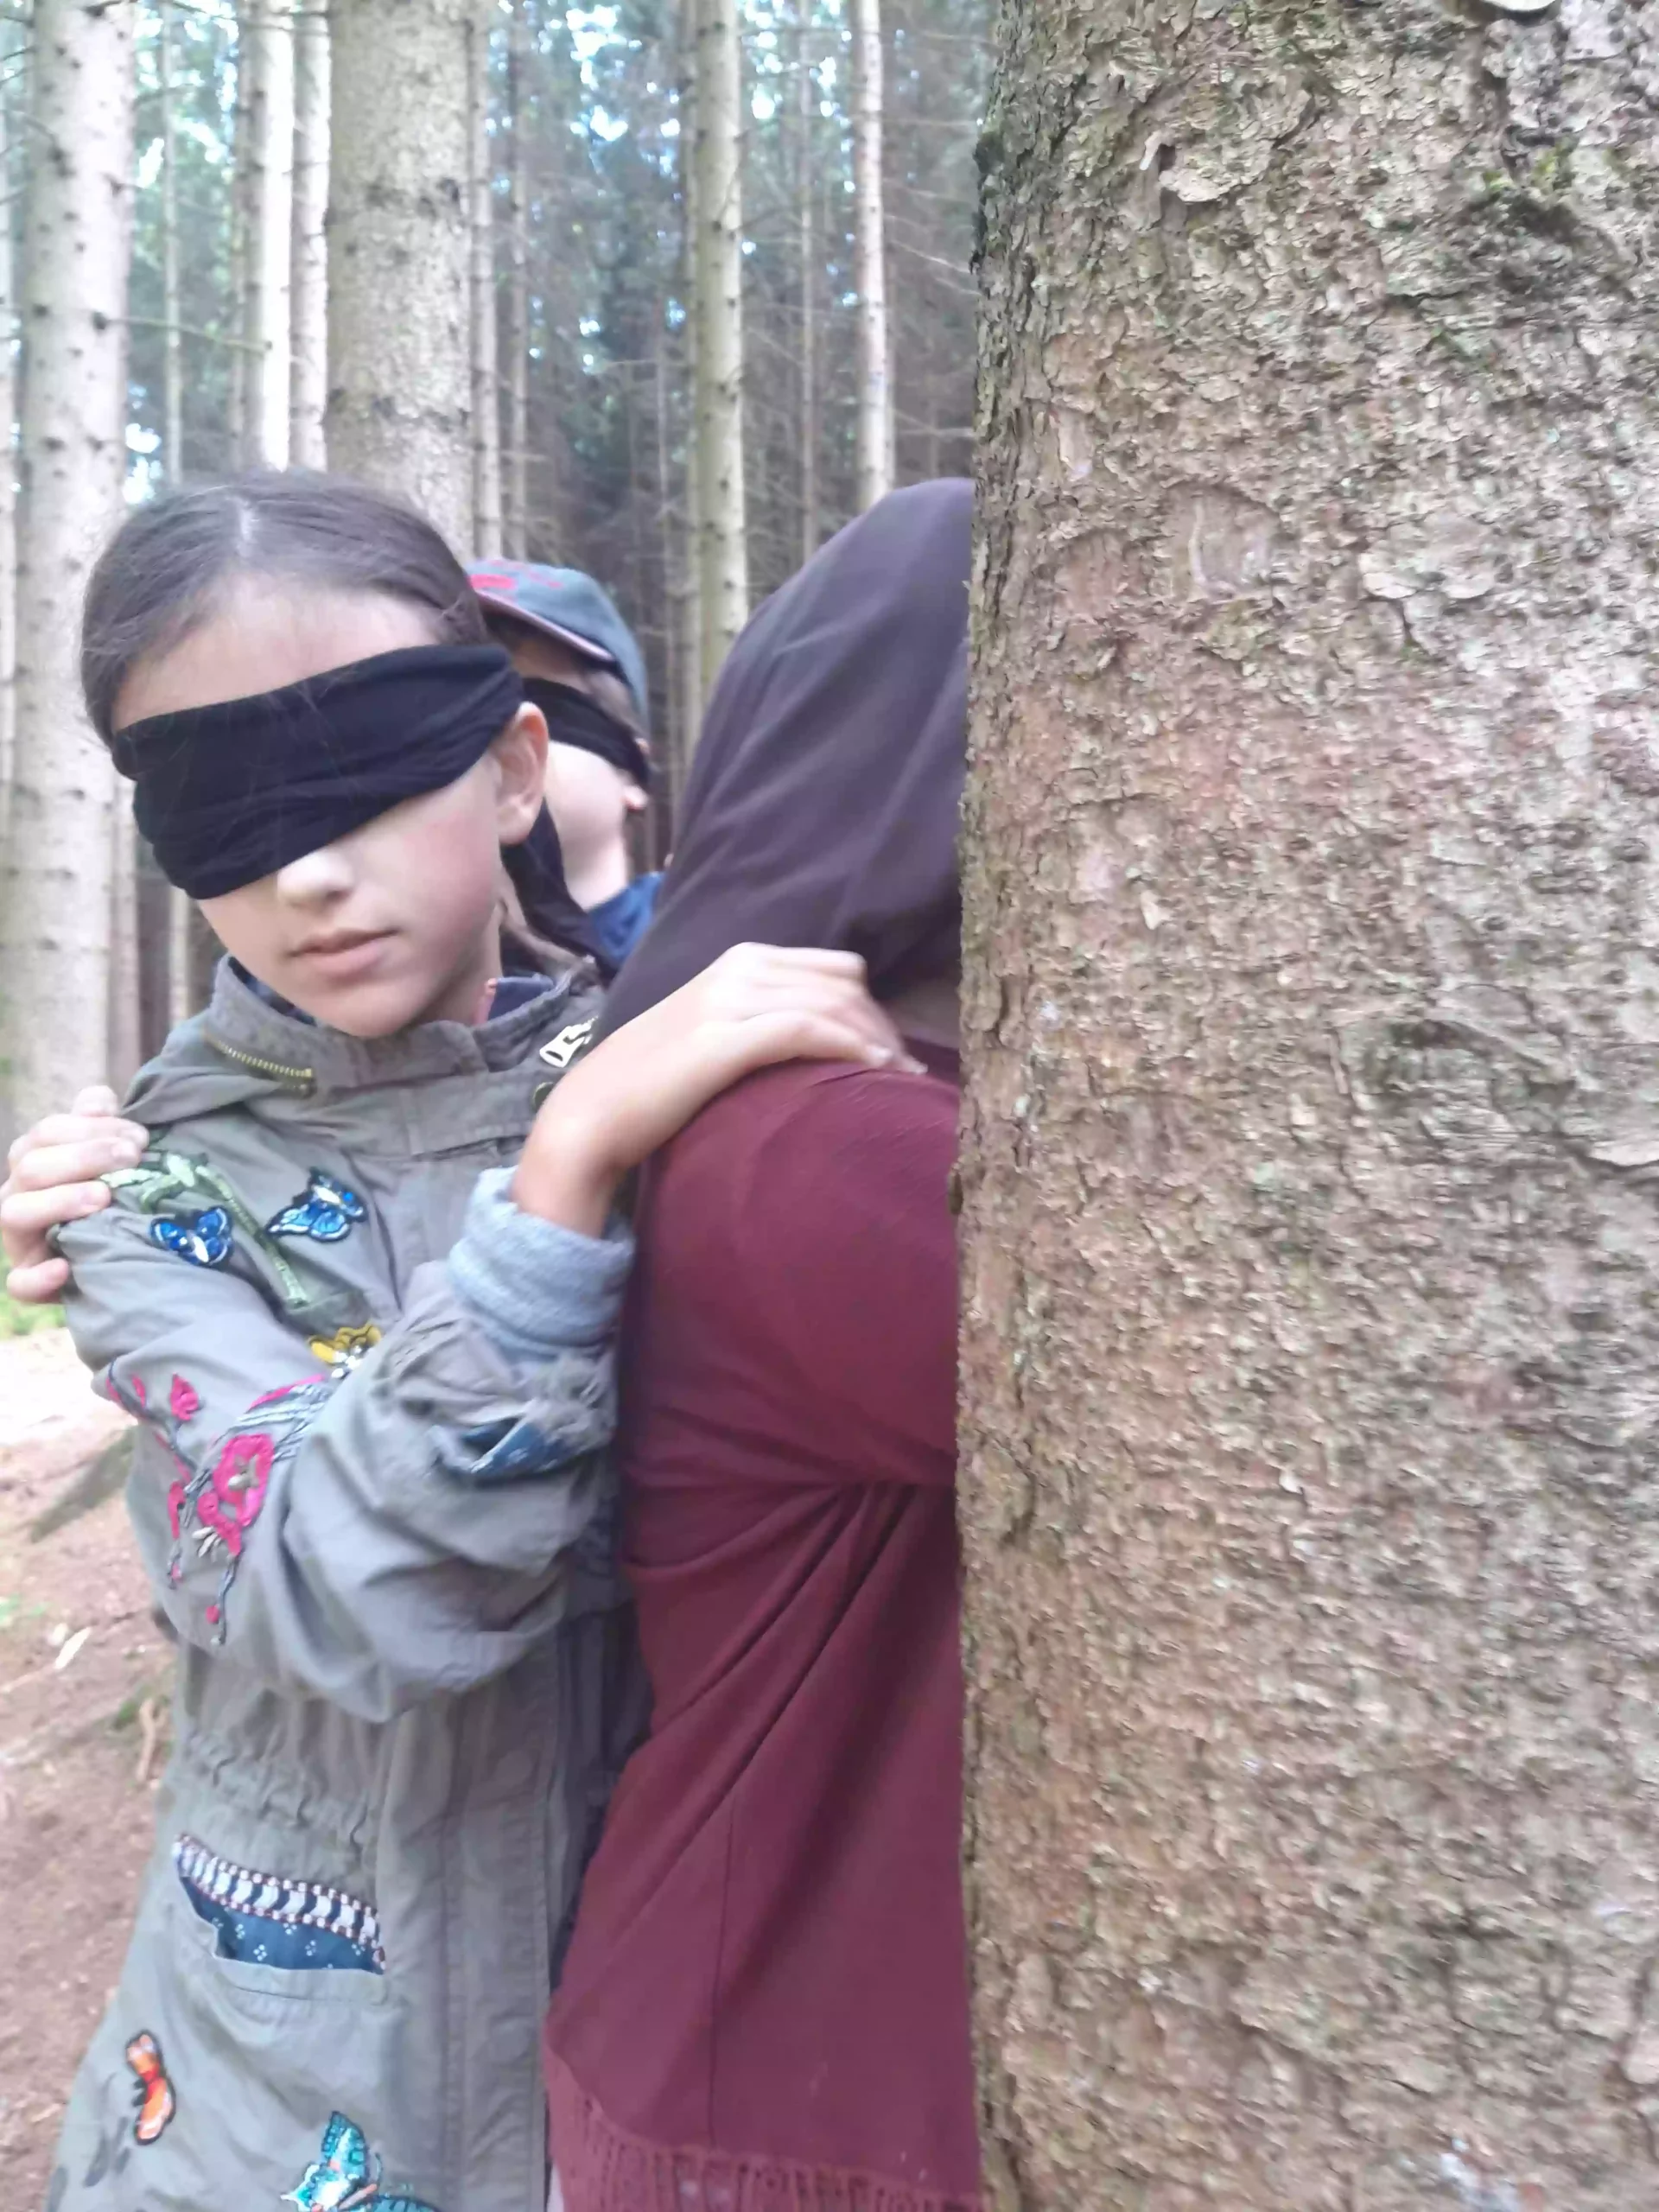 Kinder werden im Blindwalk durch den Wald geführt und erweitern so ihre Wahrnehmung.